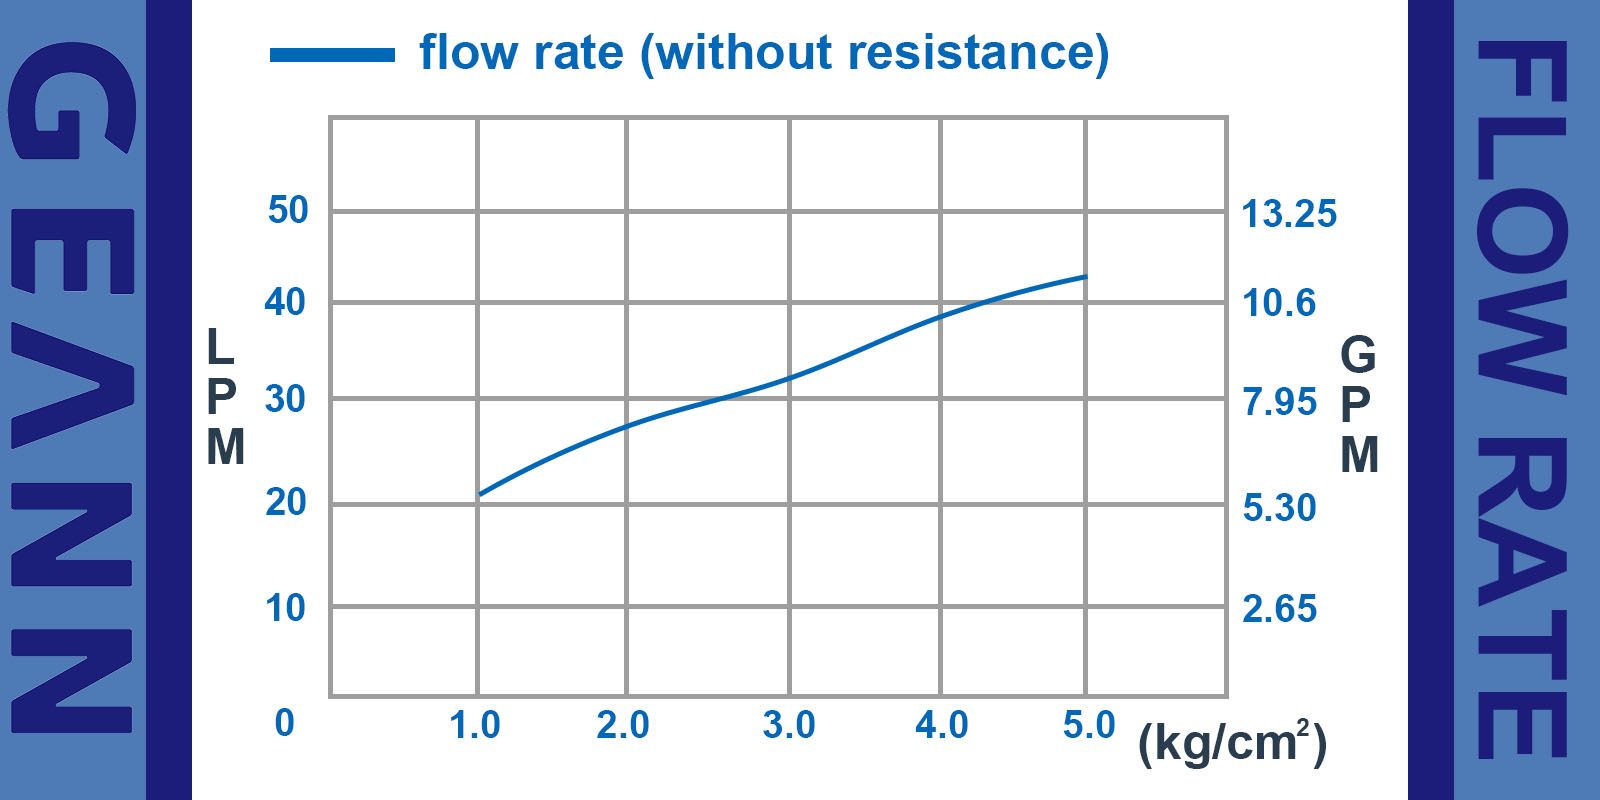 Curva de taxa de fluxo tipo DHDU